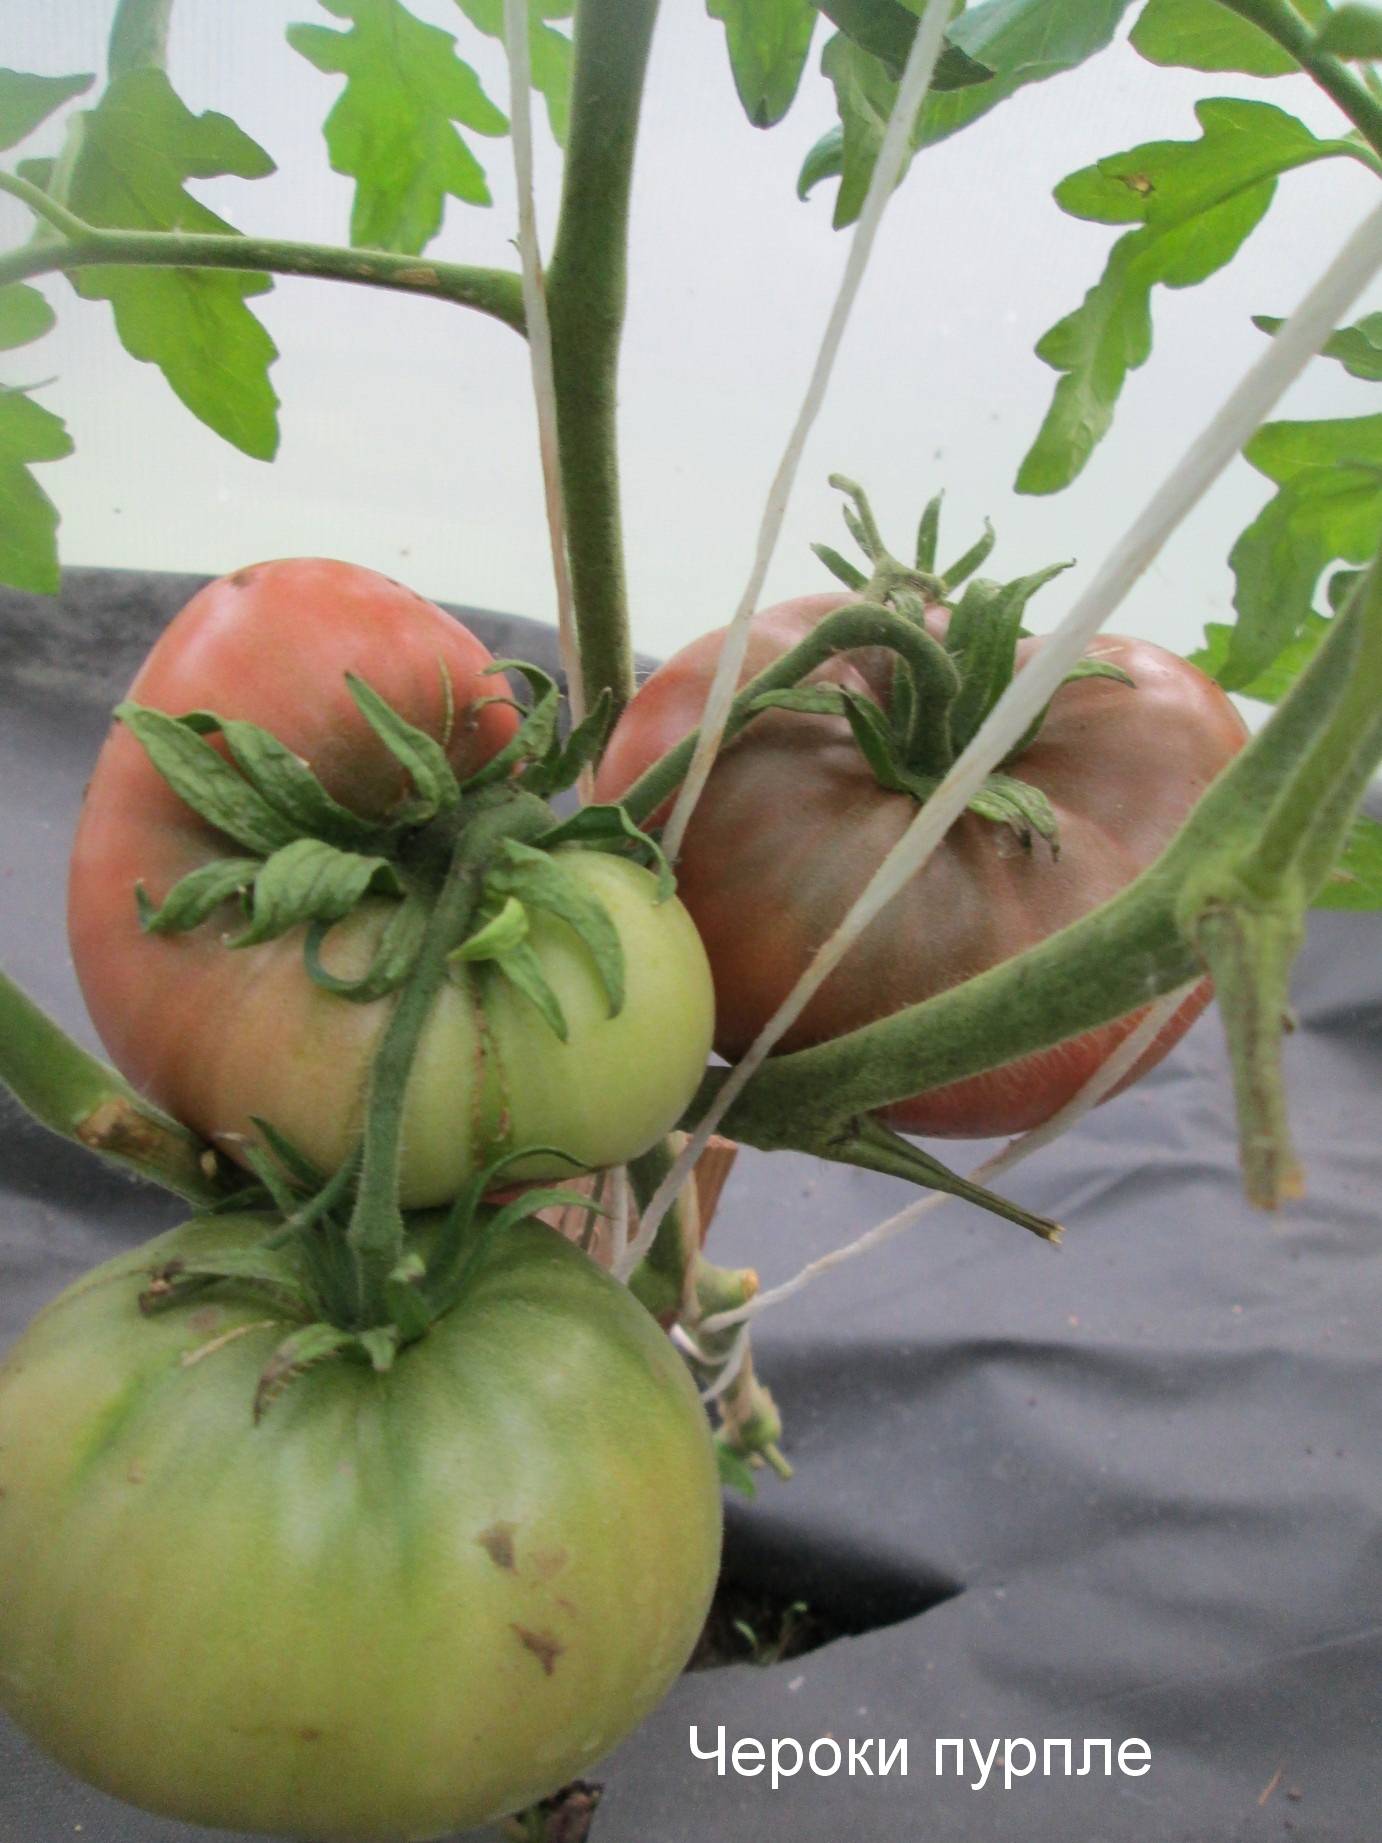 Фиолетовые помидоры: обзор сортов и полезные свойства